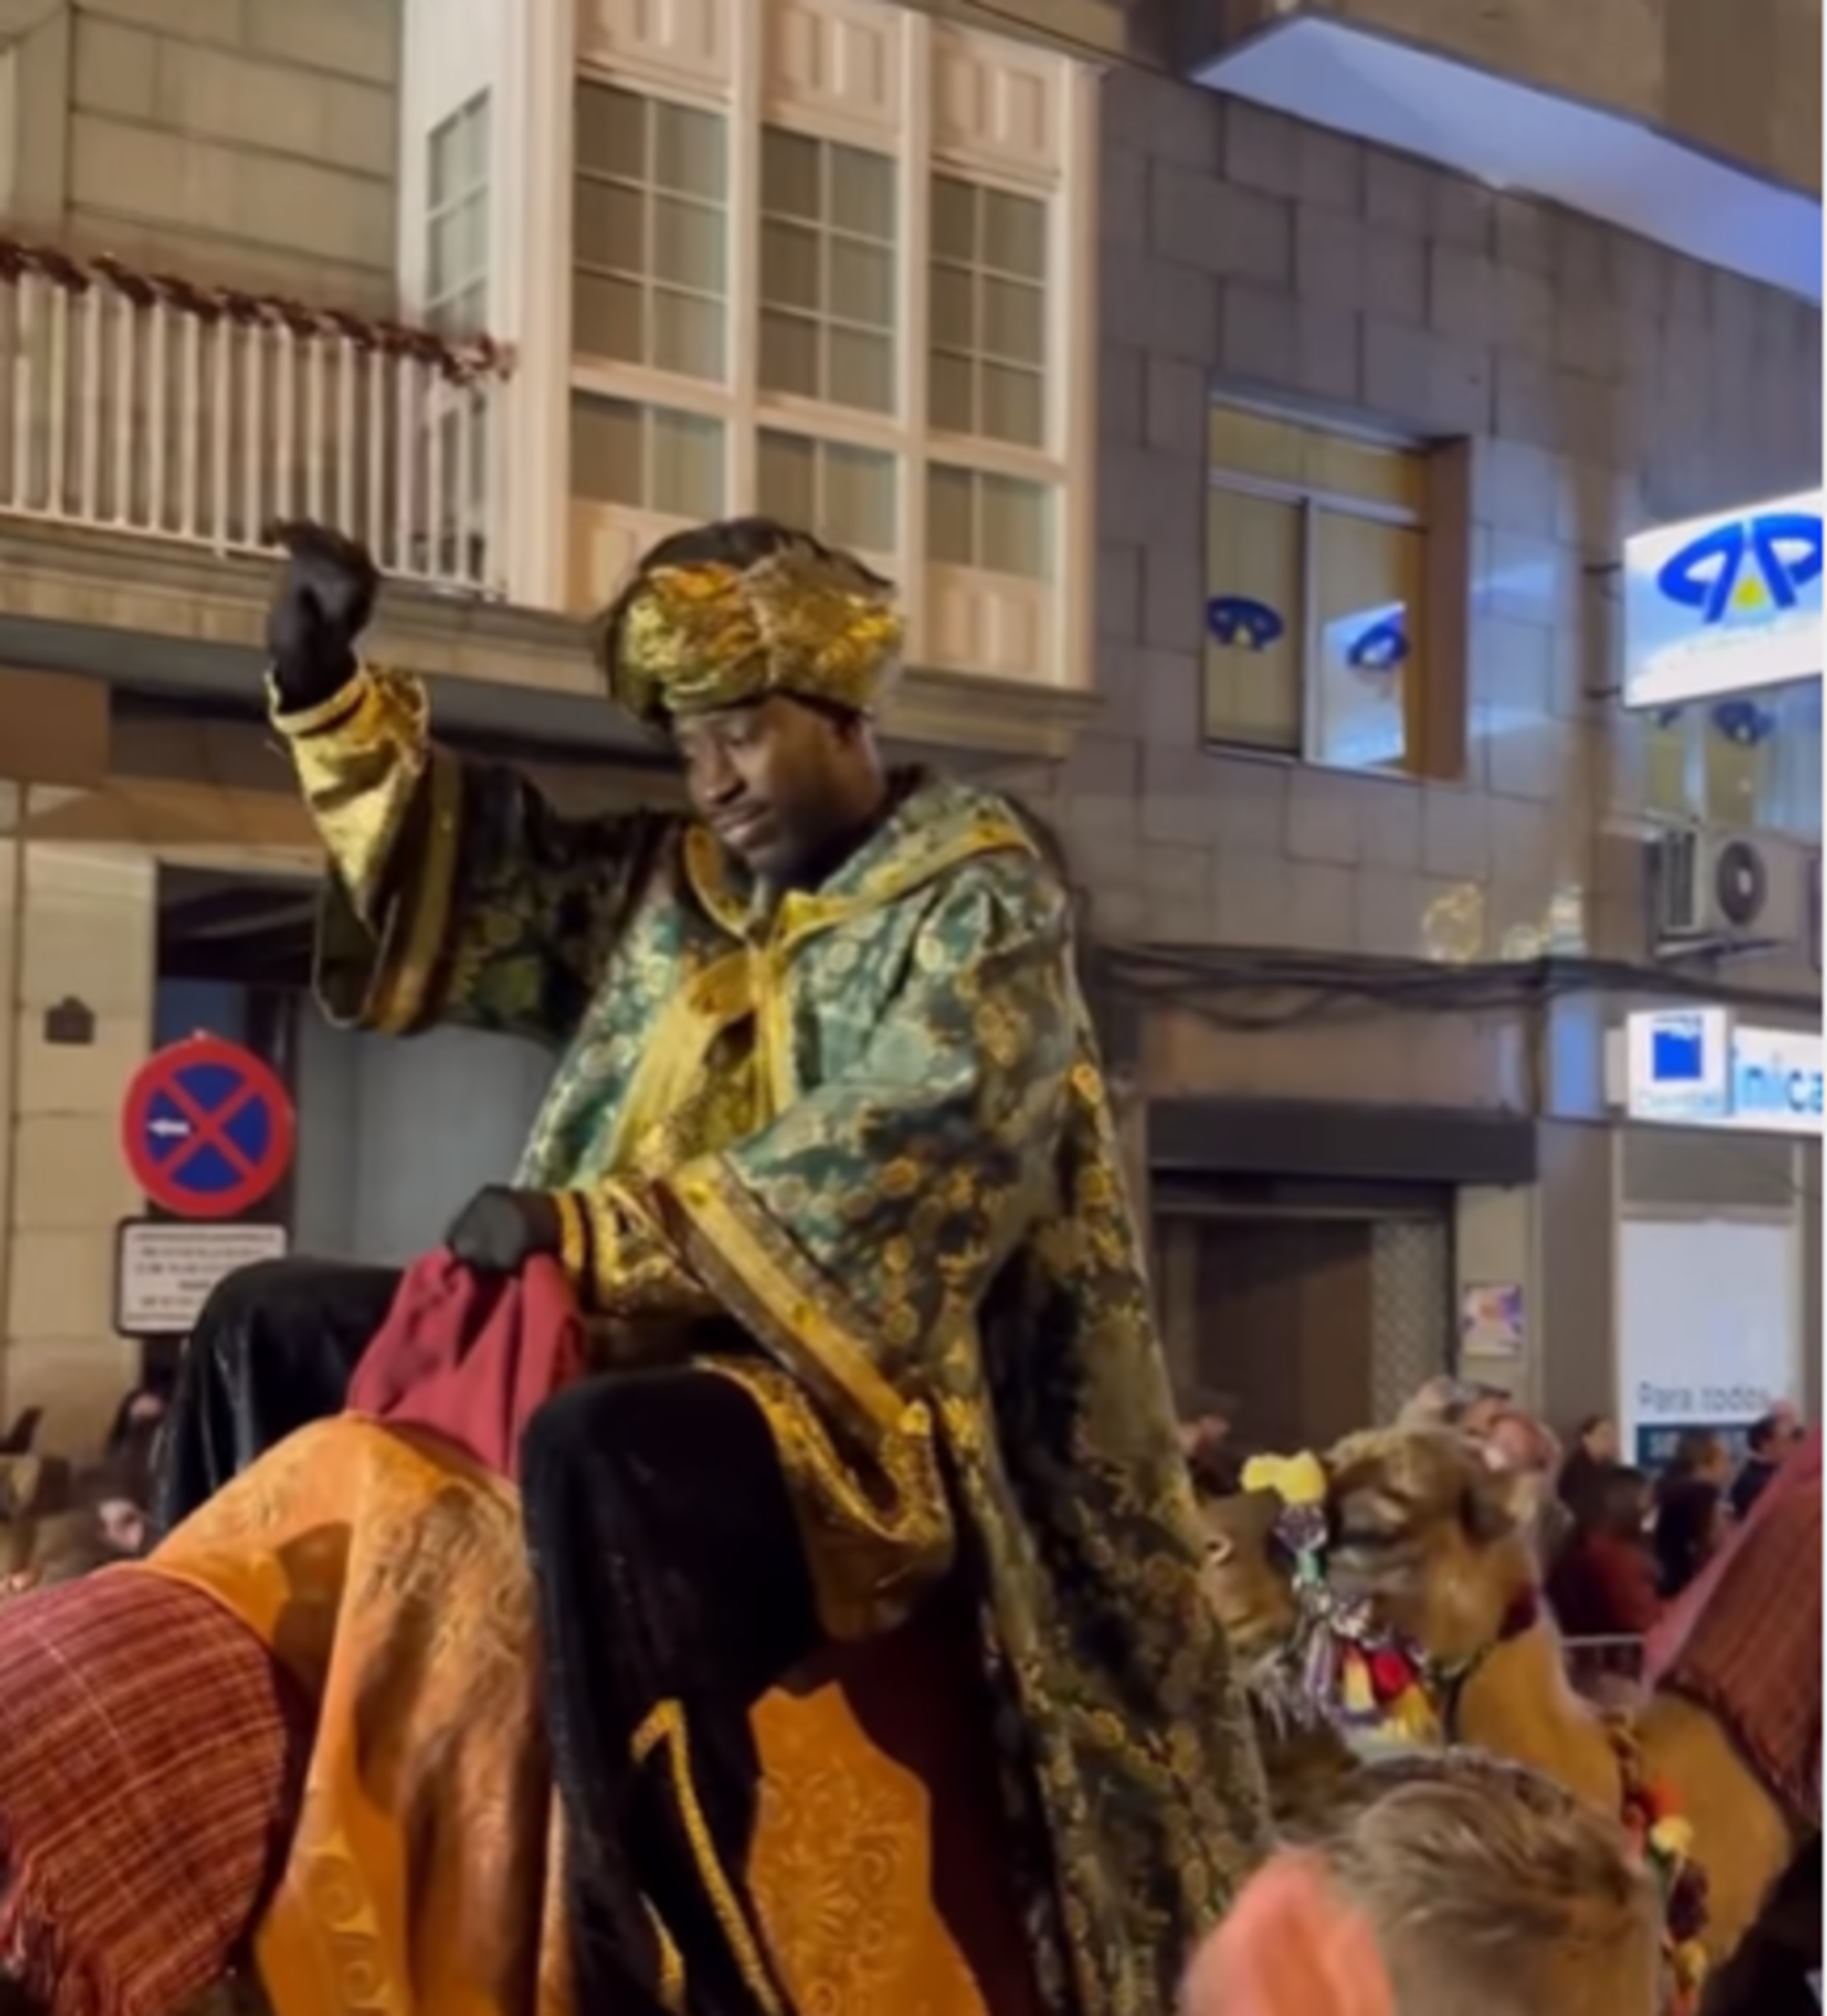 Escándalo en Ourense: el rey Baltasar de la cabalgata estaba condenado por abusos sexuales